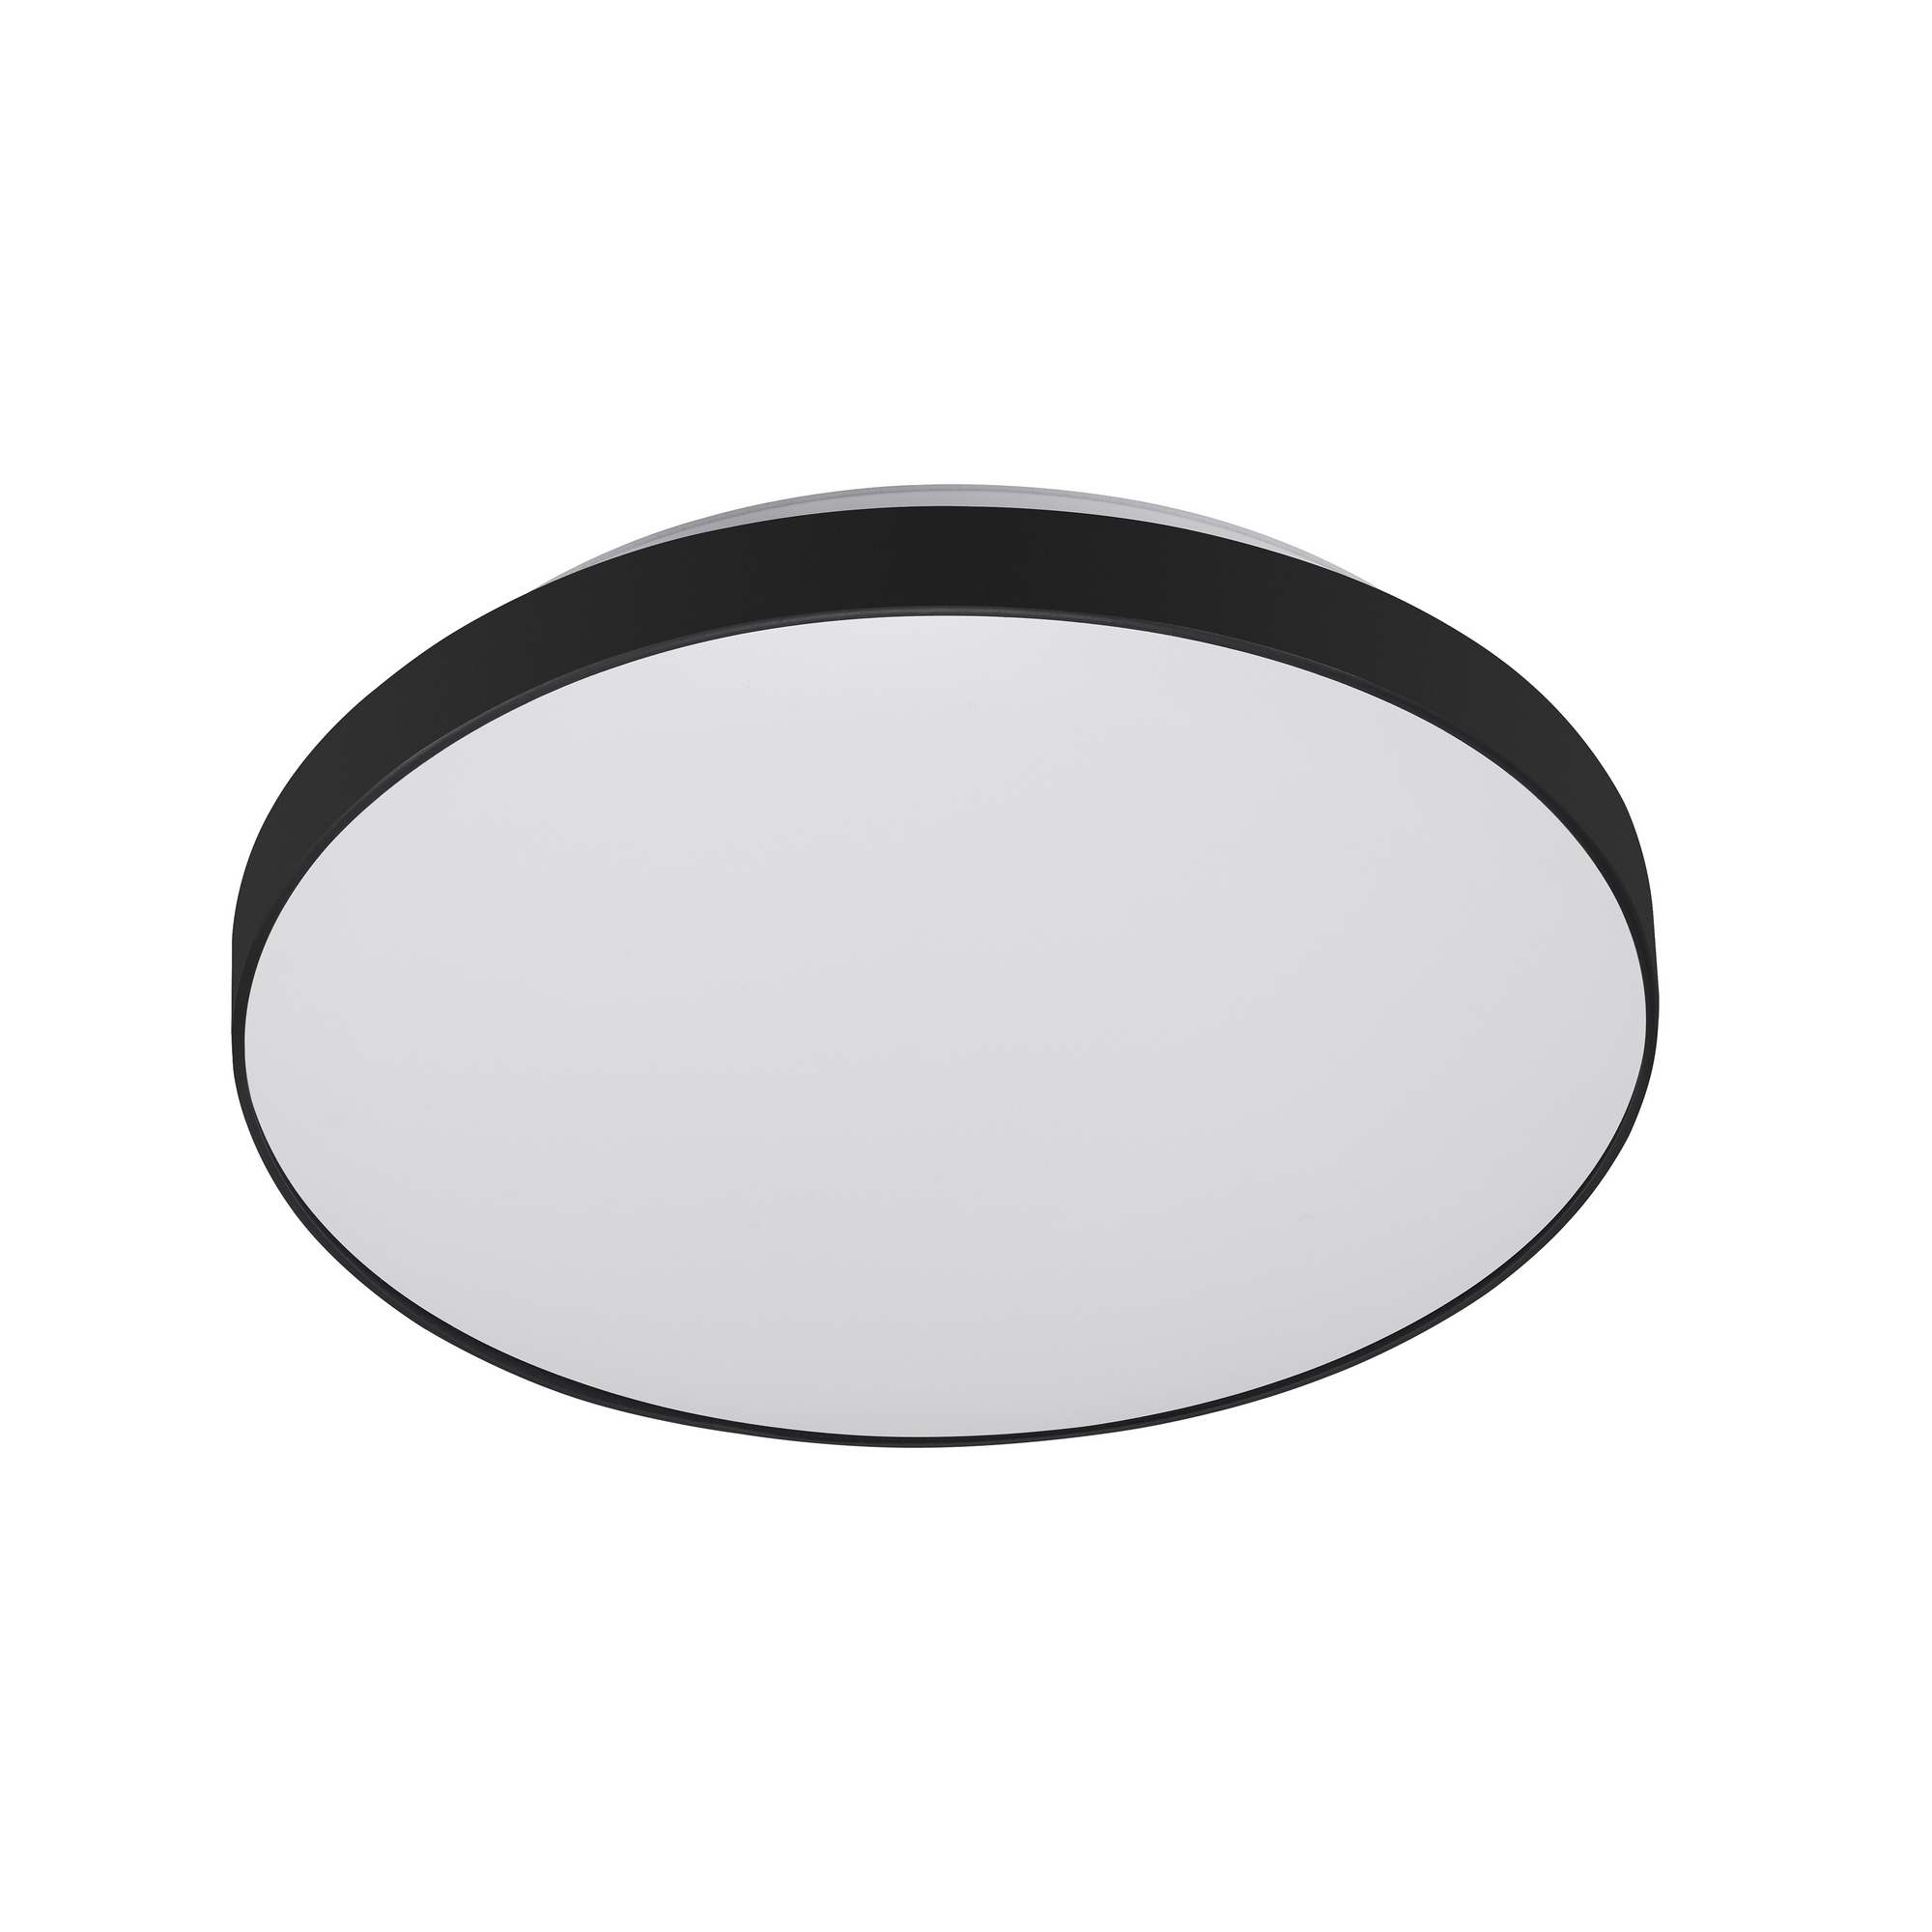 LED-Deckenleuchte 'Newa' weiß/schwarz Ø 29 x 6,3 cm, mit Bewegungsmelder + product picture